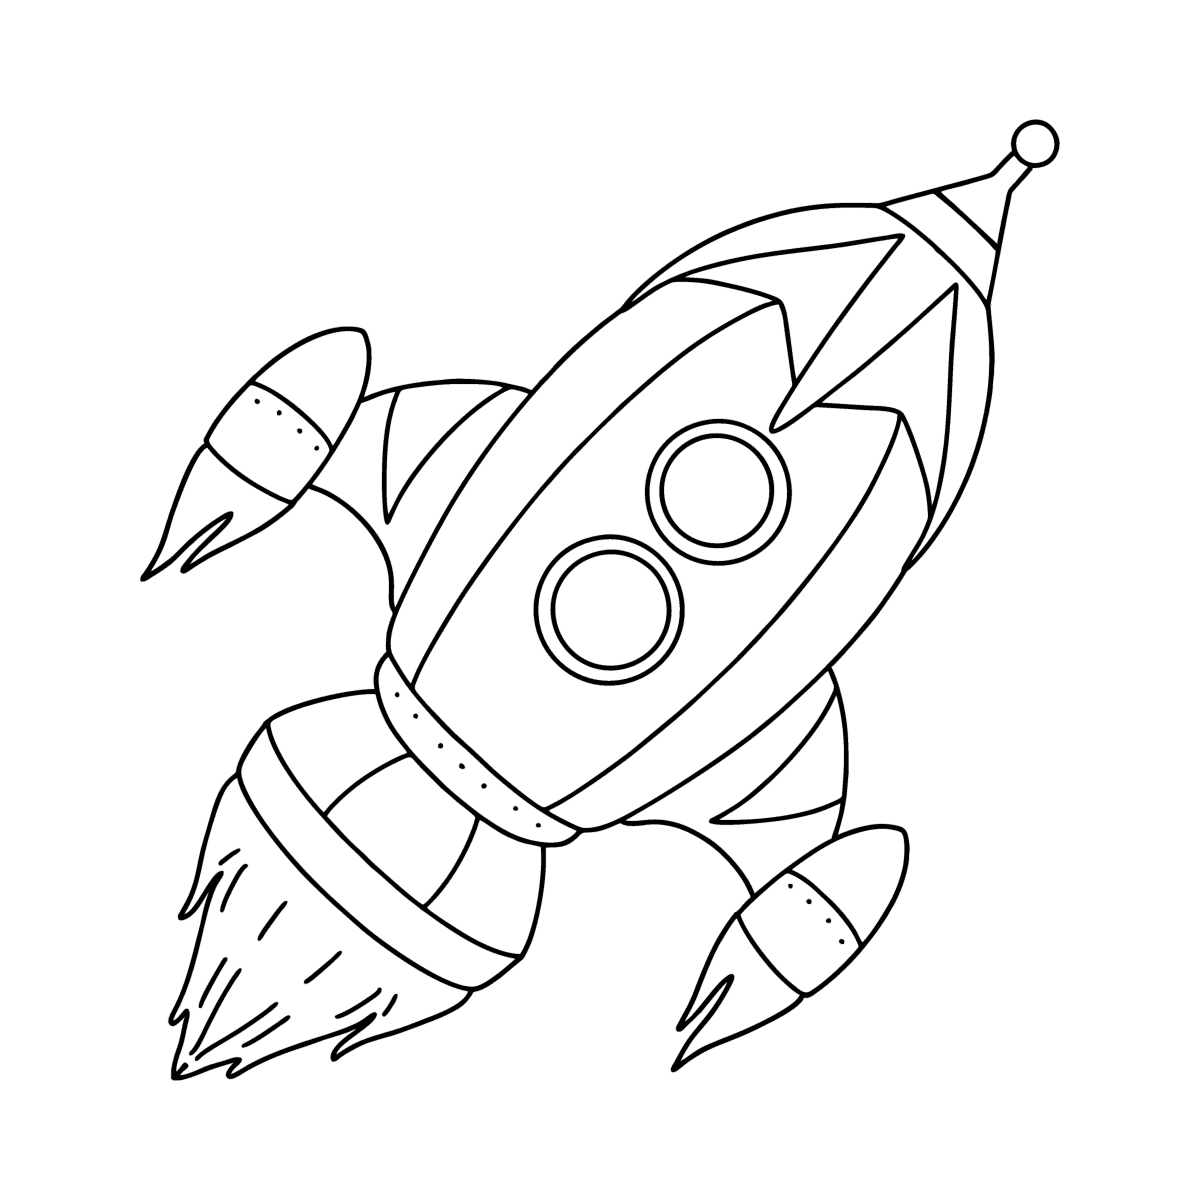 Ракета рисунок для детей 5 лет. Космический корабль карандашом. Ракета рисунок. Ракета картинка для детей. Космический корабль рисунок карандашом.